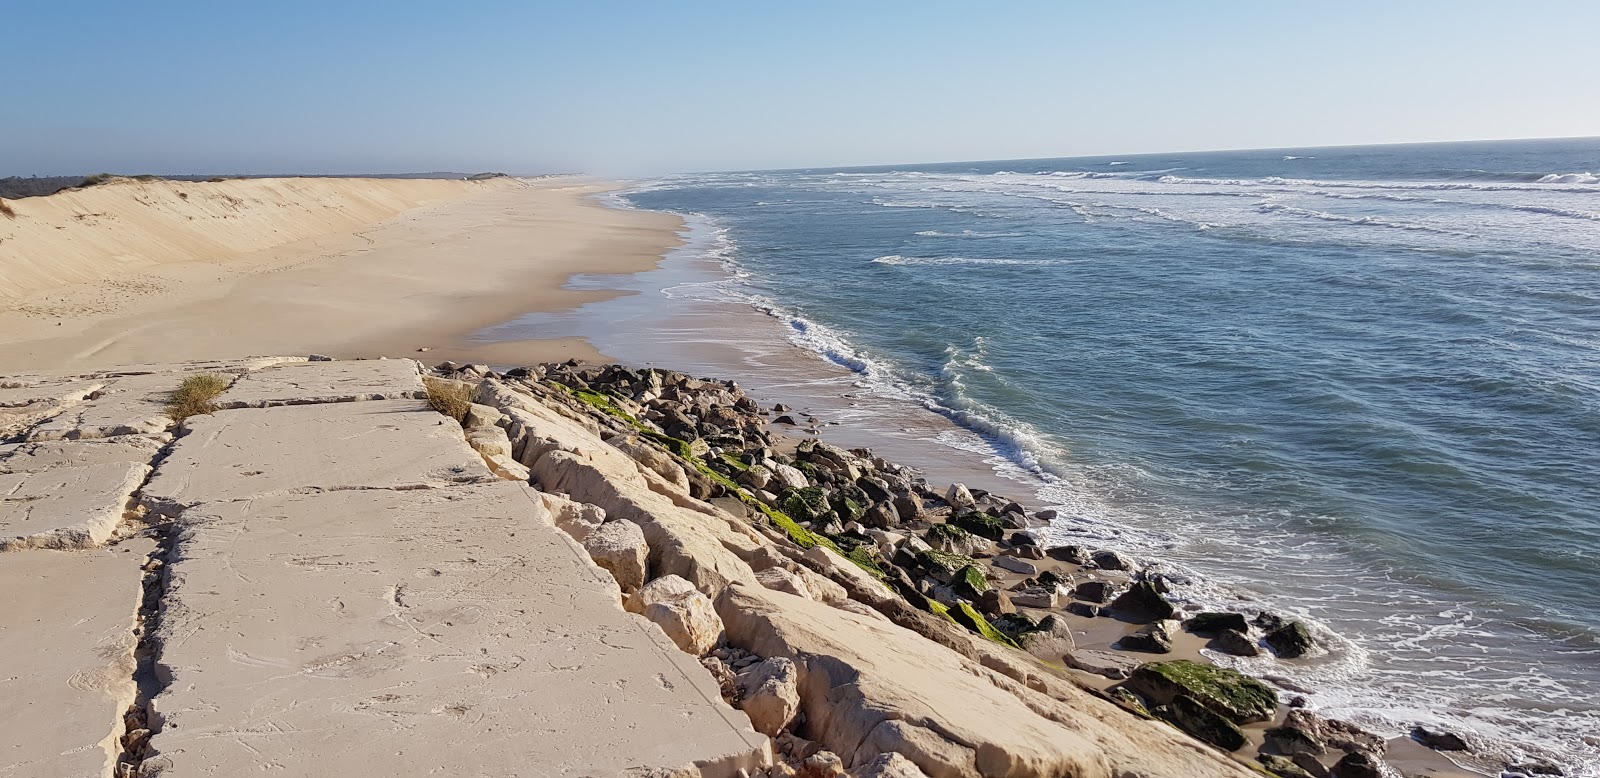 Fotografie cu Praia da Leirosa - locul popular printre cunoscătorii de relaxare